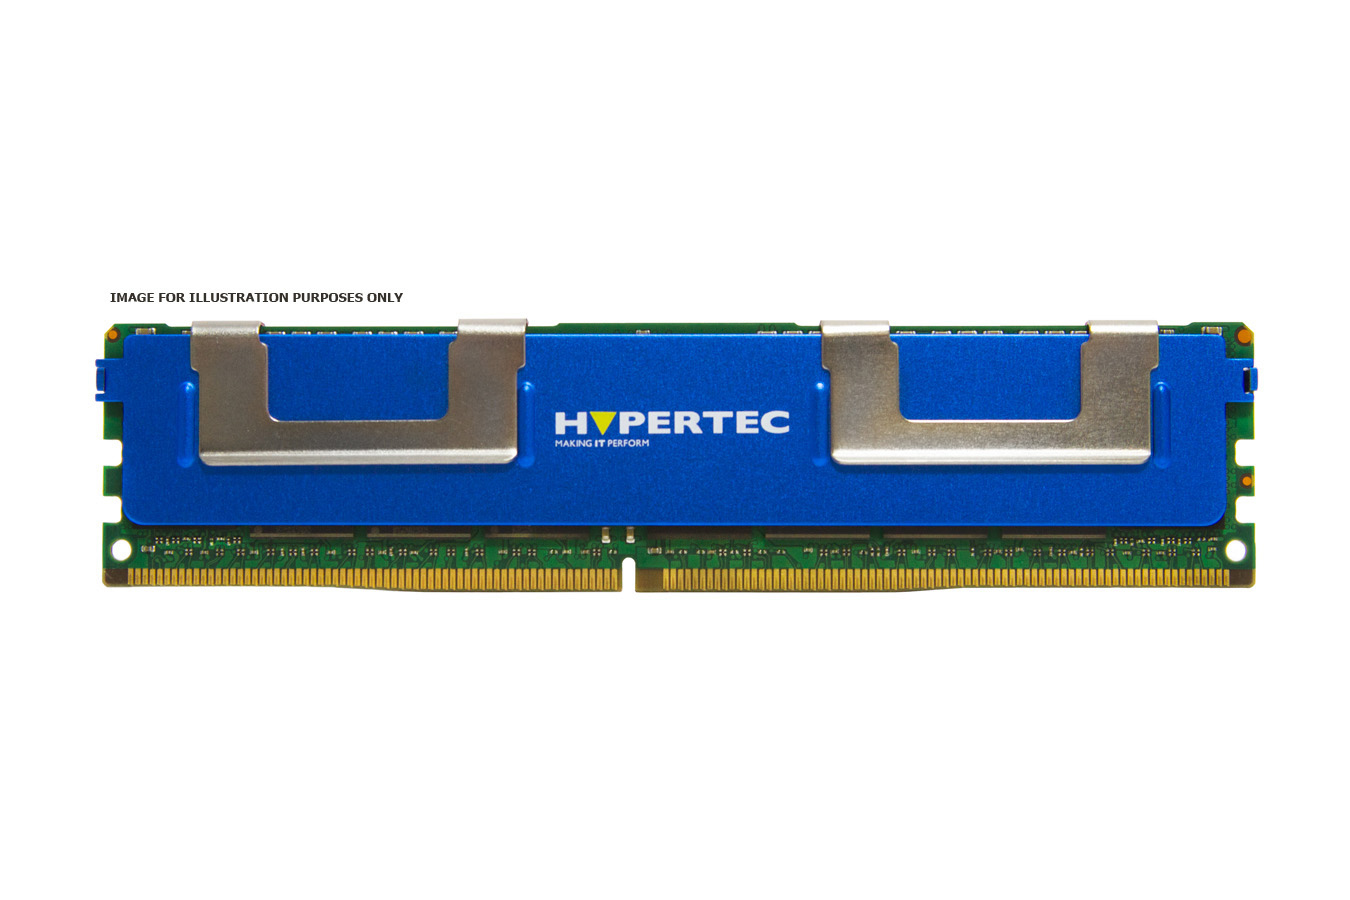 Hypertec 49Y1436-HY memory module 8 GB 1 x 8 GB DDR3 1333 MHz ECC